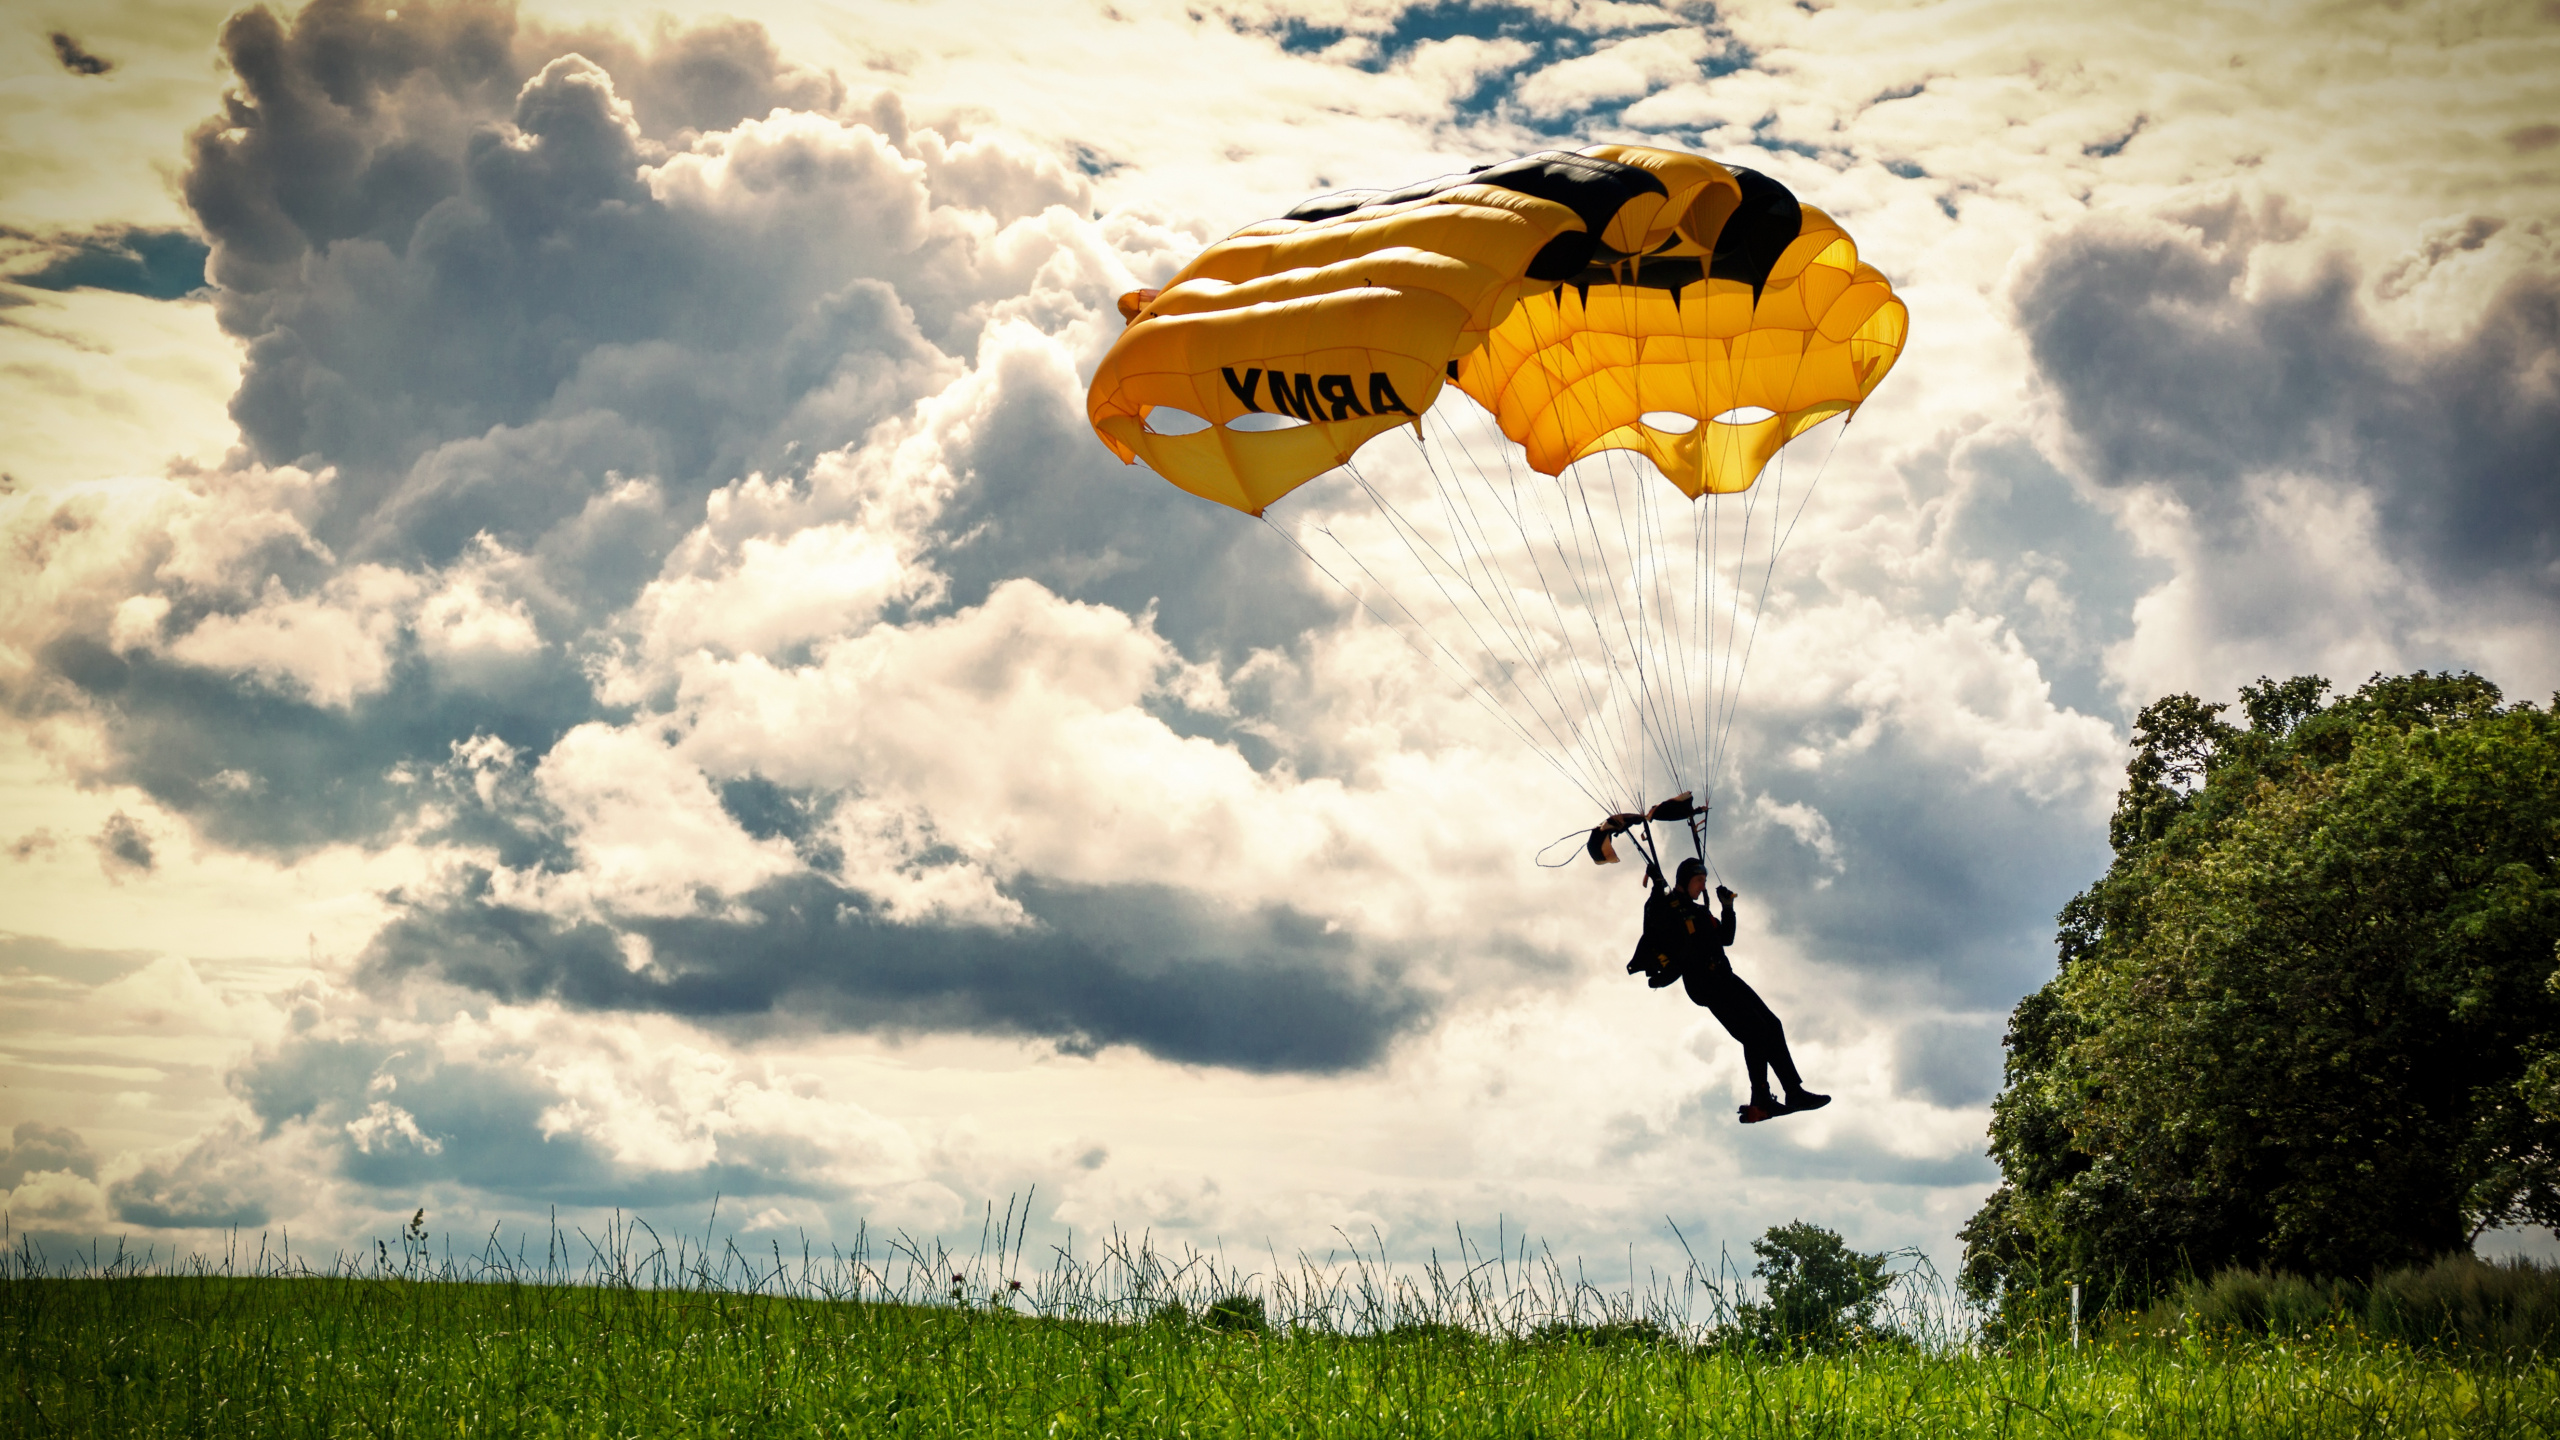 降落伞, 人们在自然界, 快乐的, 草, 乐趣 壁纸 2560x1440 允许